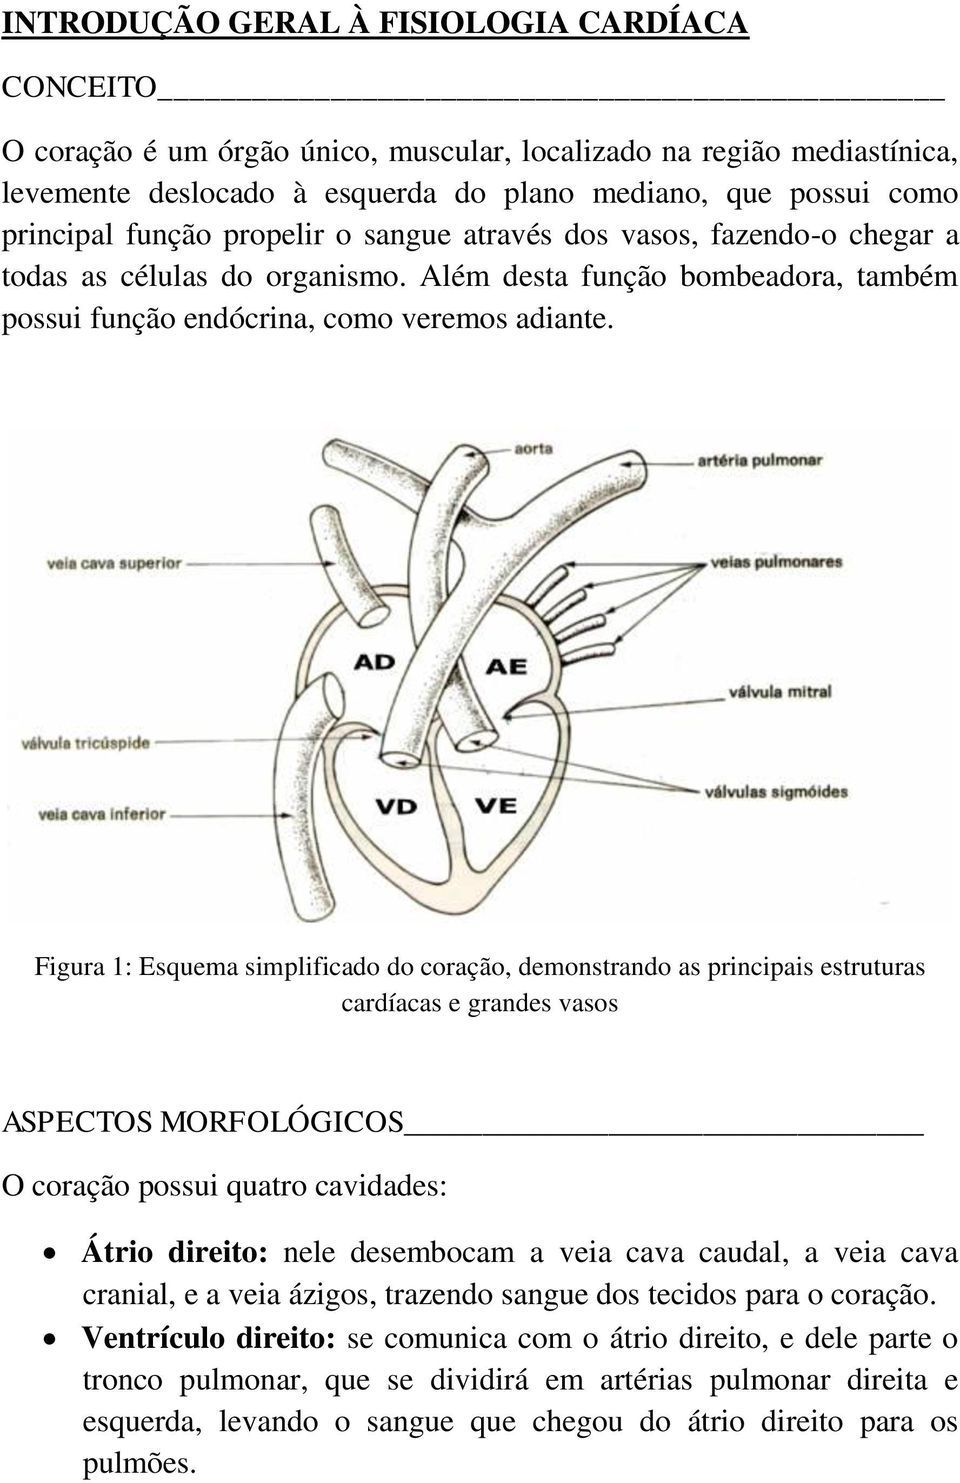 Figura 1: Esquema simplificado do coração, demonstrando as principais estruturas cardíacas e grandes vasos ASPECTOS MORFOLÓGICOS O coração possui quatro cavidades: Átrio direito: nele desembocam a